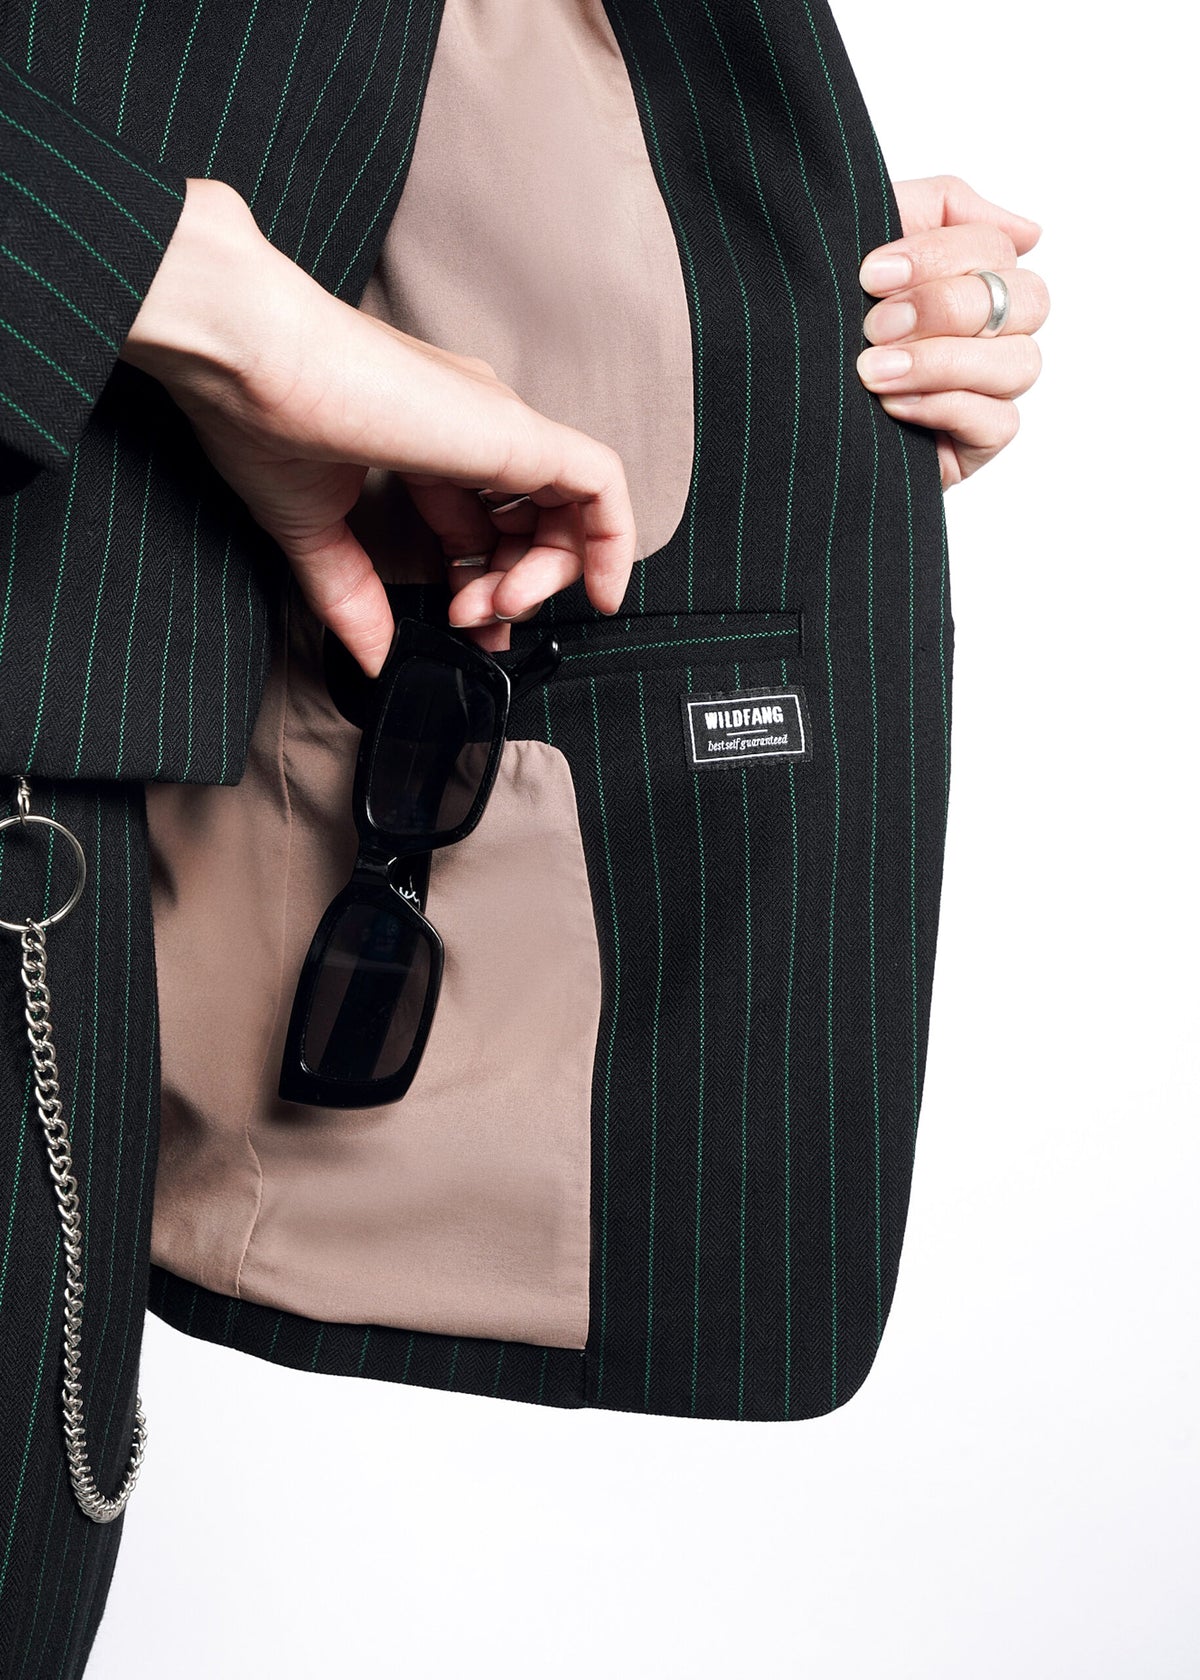 The Empower Pinstripe Tux Blazer in Black/Emerald